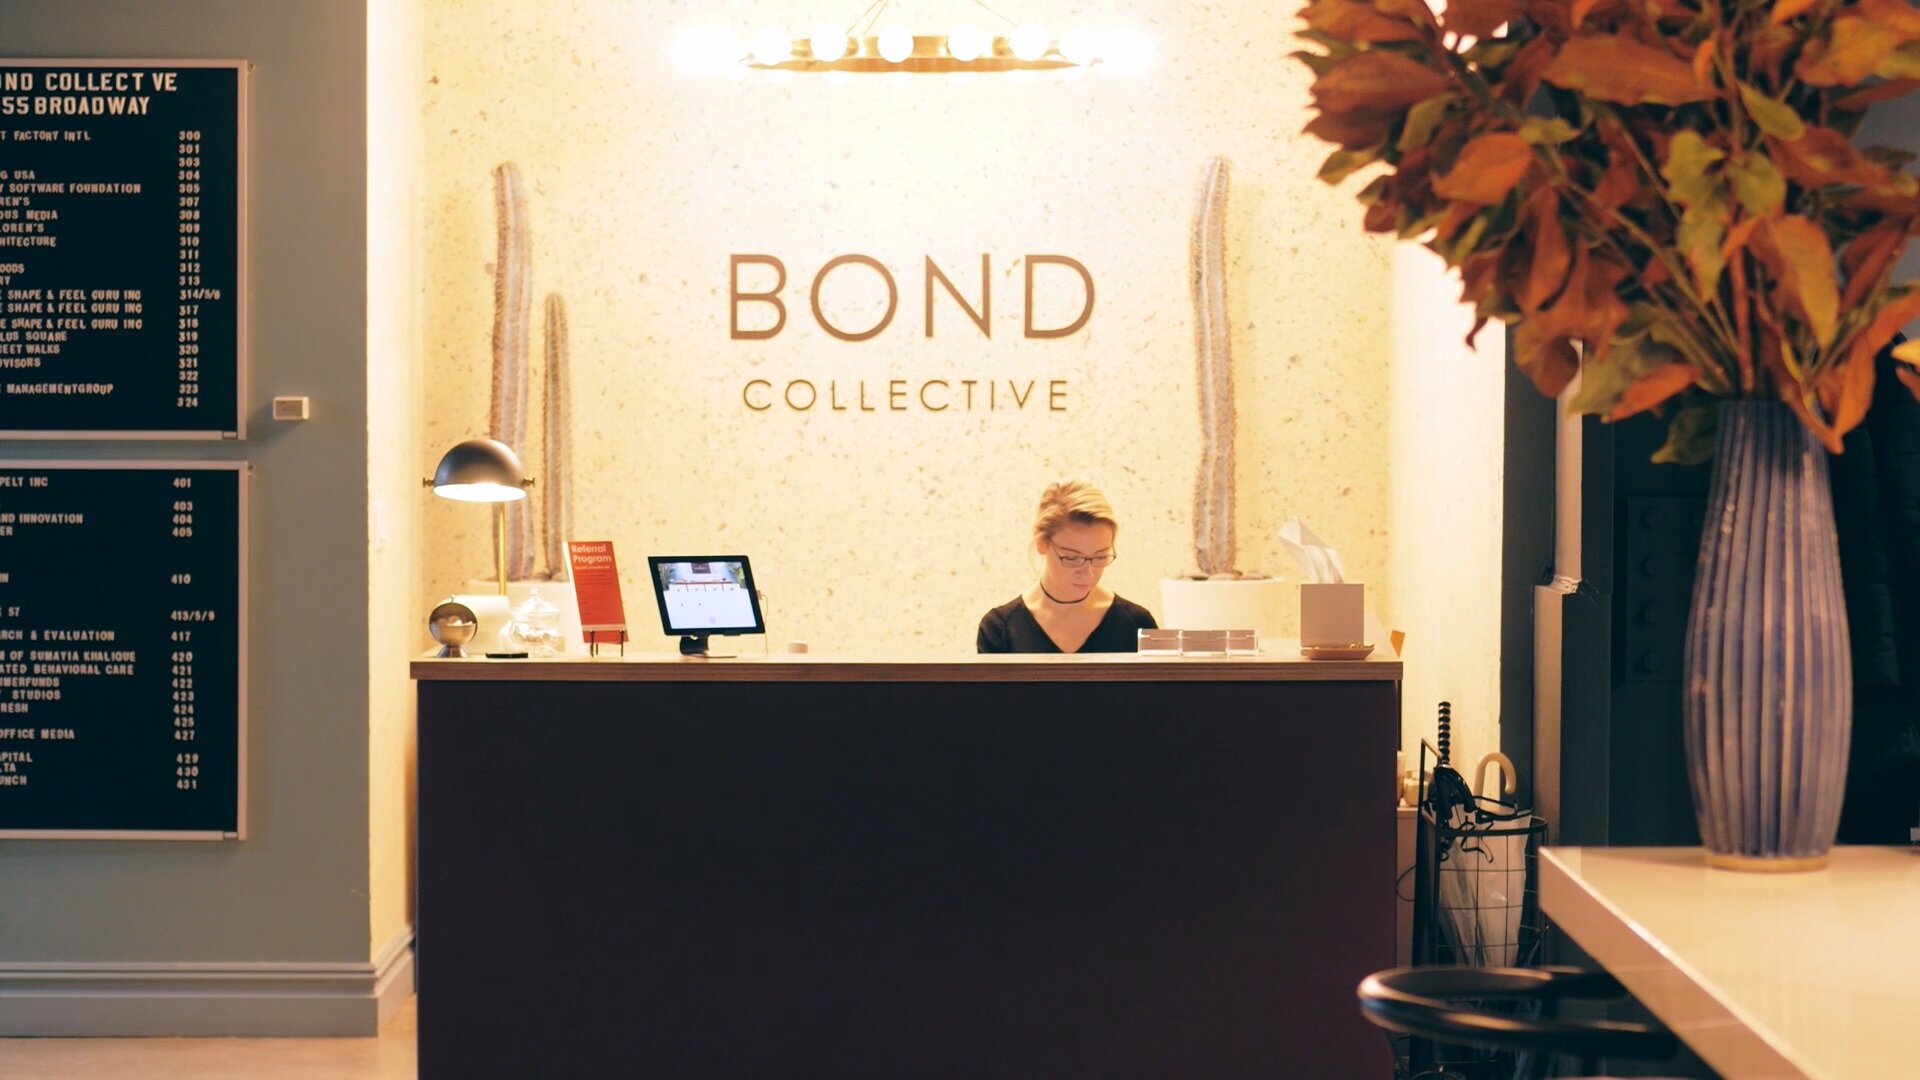 Bond Collective reception area